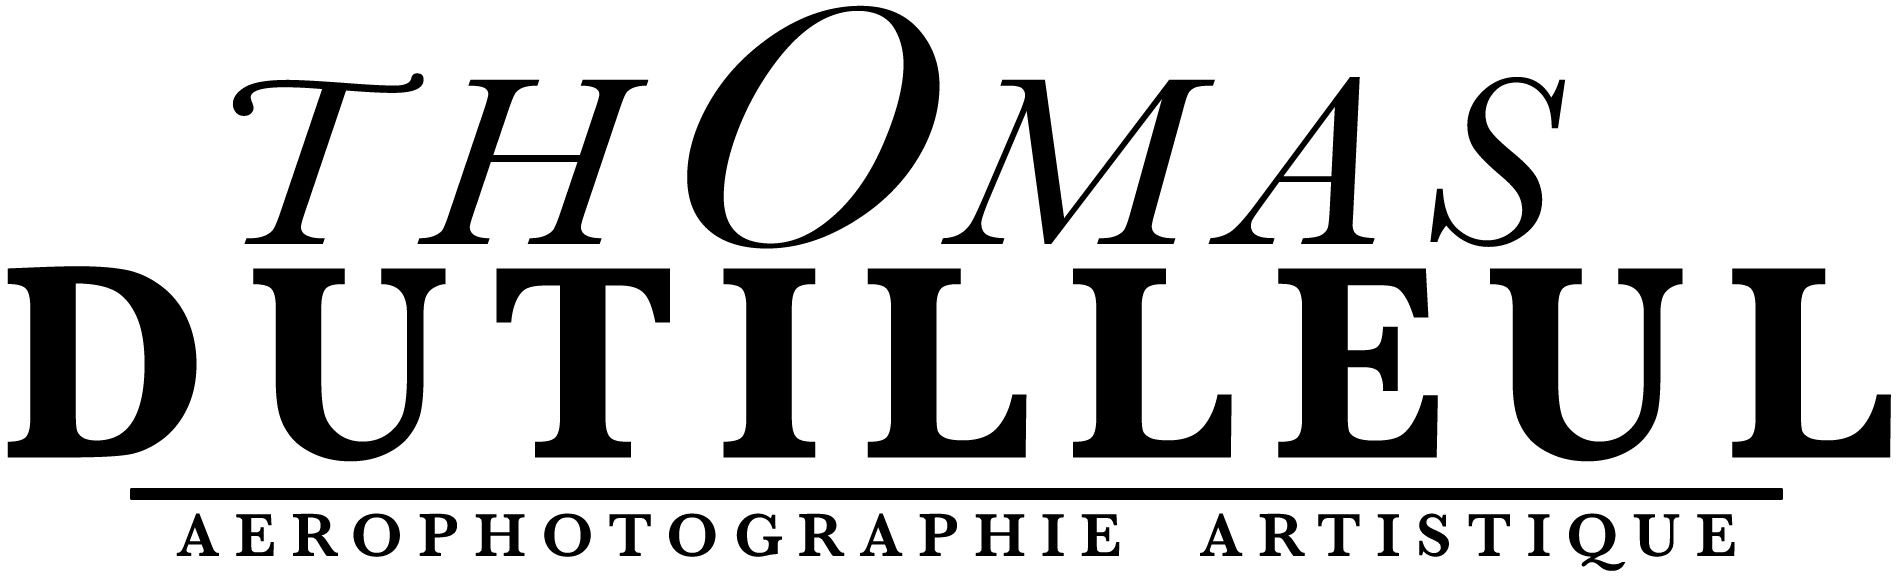 THOMAS DUTILLEUL - AÉROPHOTOGRAPHIE ARTISTIQUE